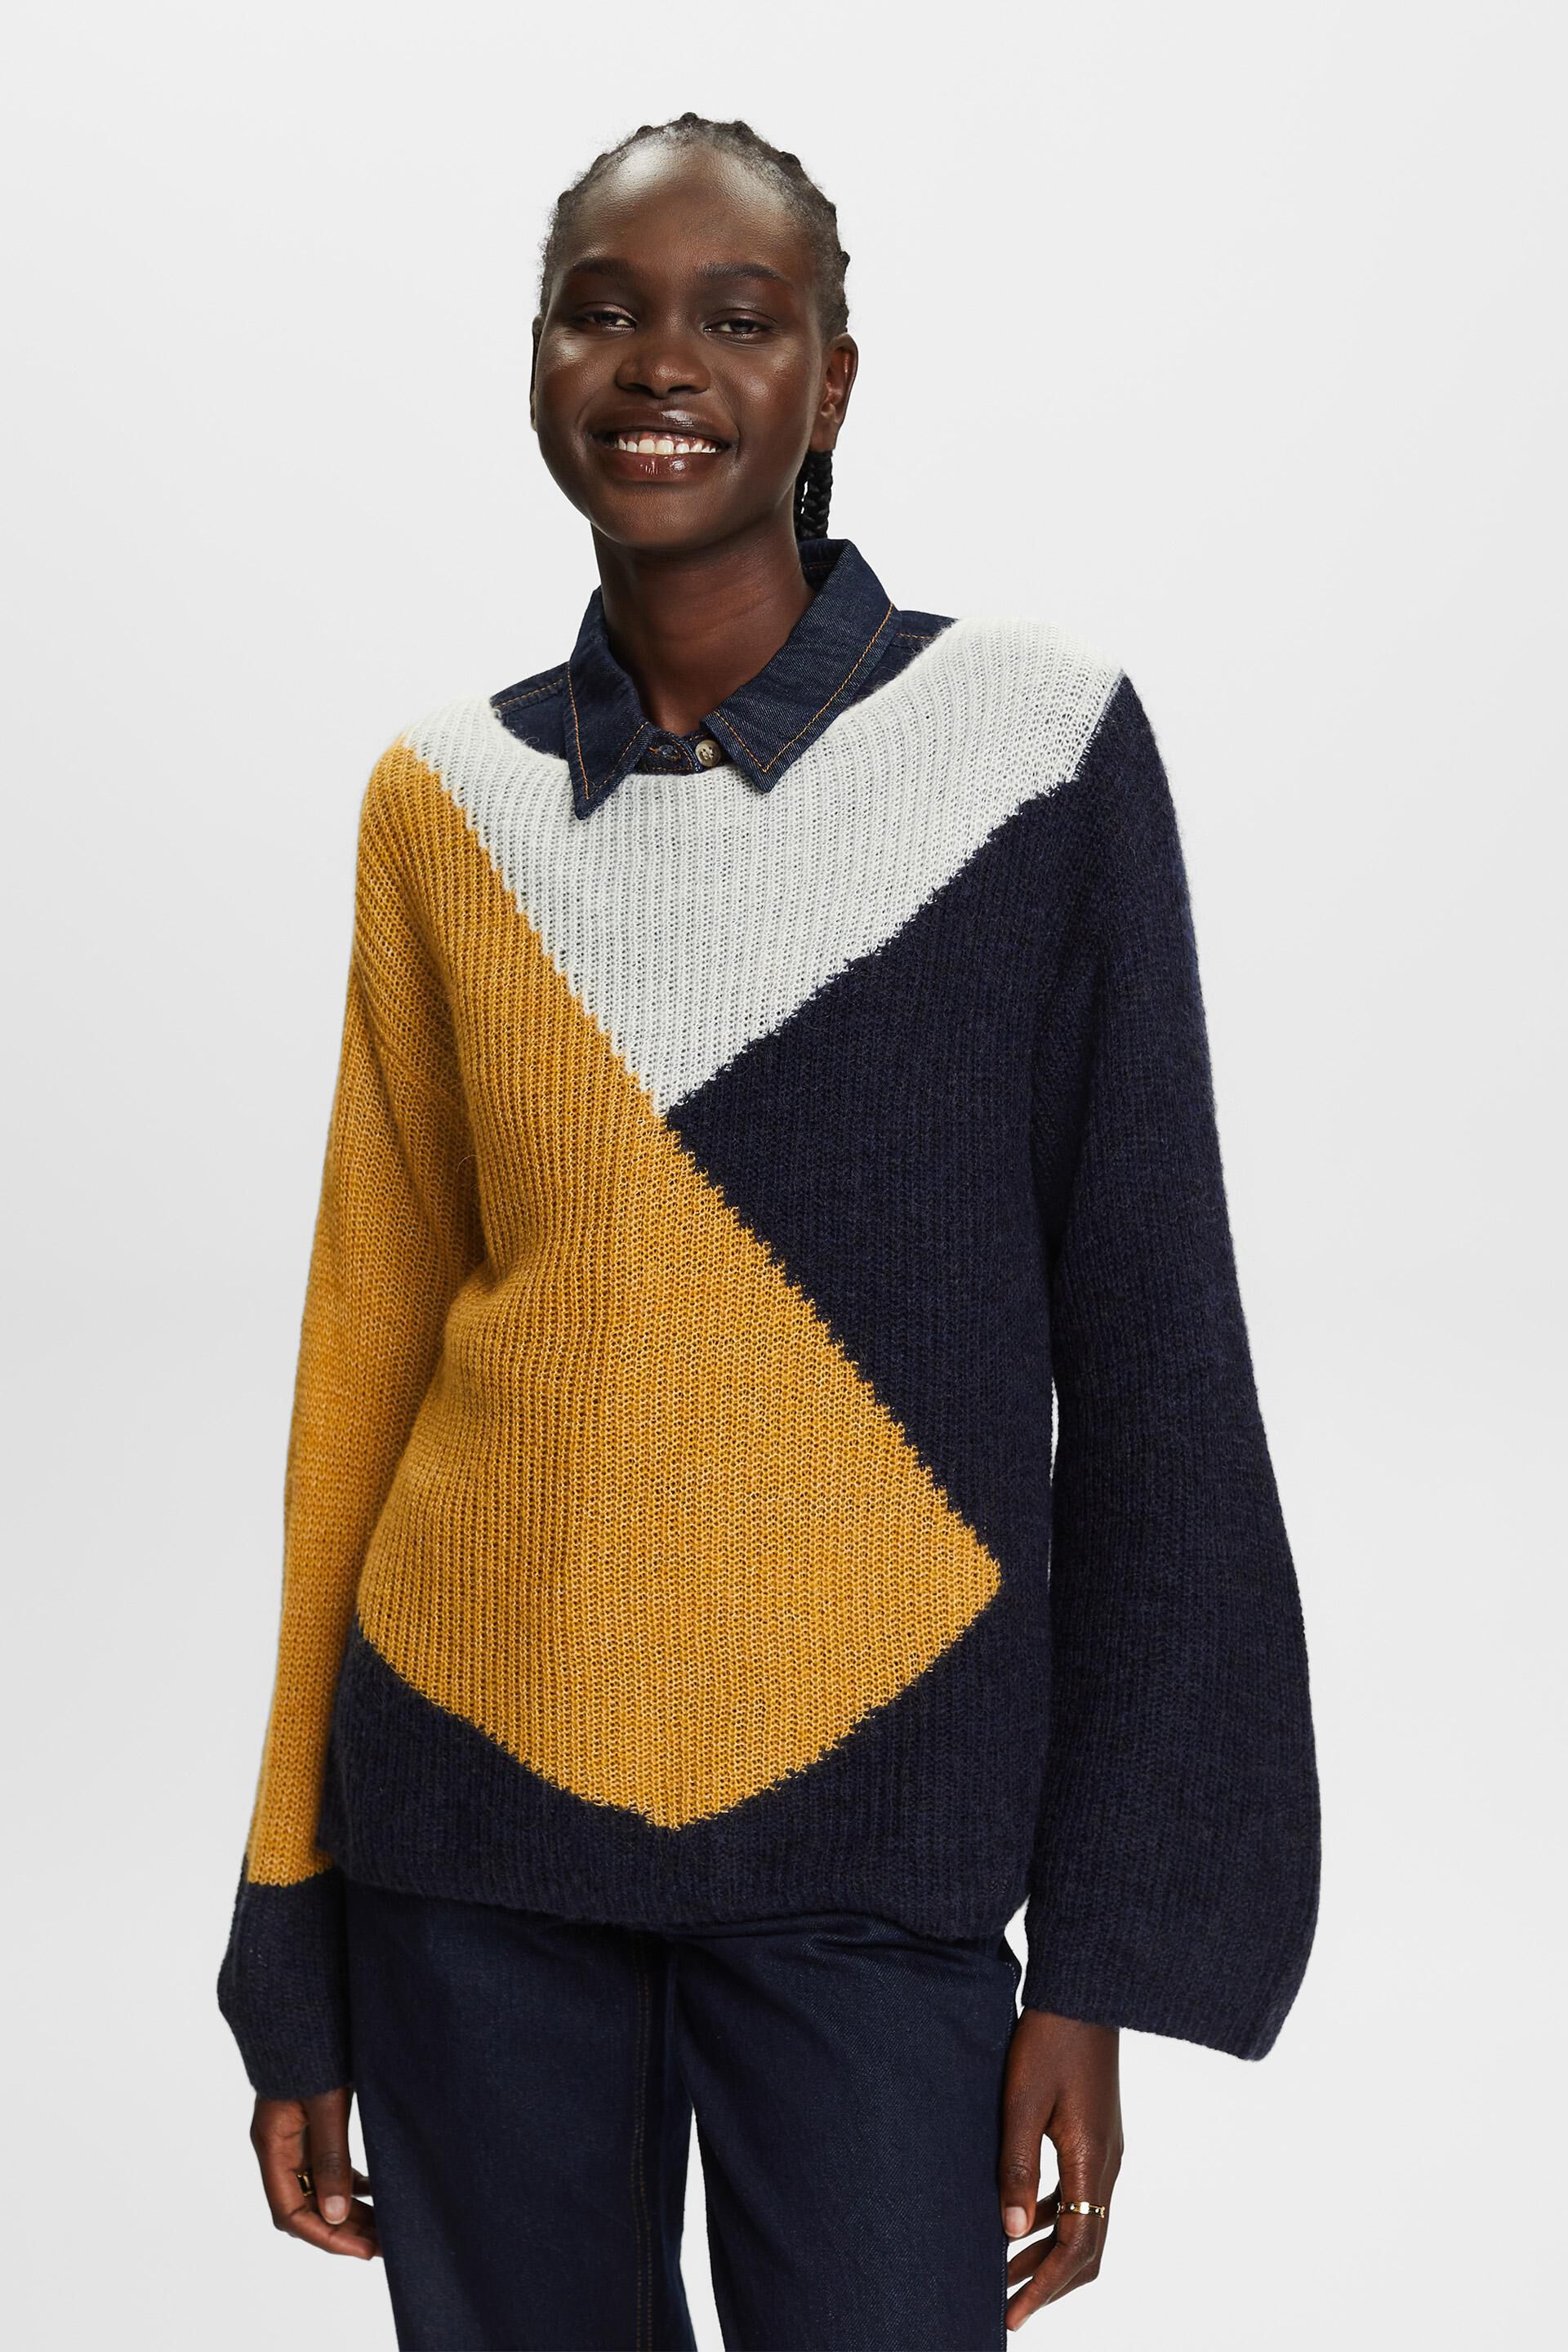 Colourblock jumper, wool blend